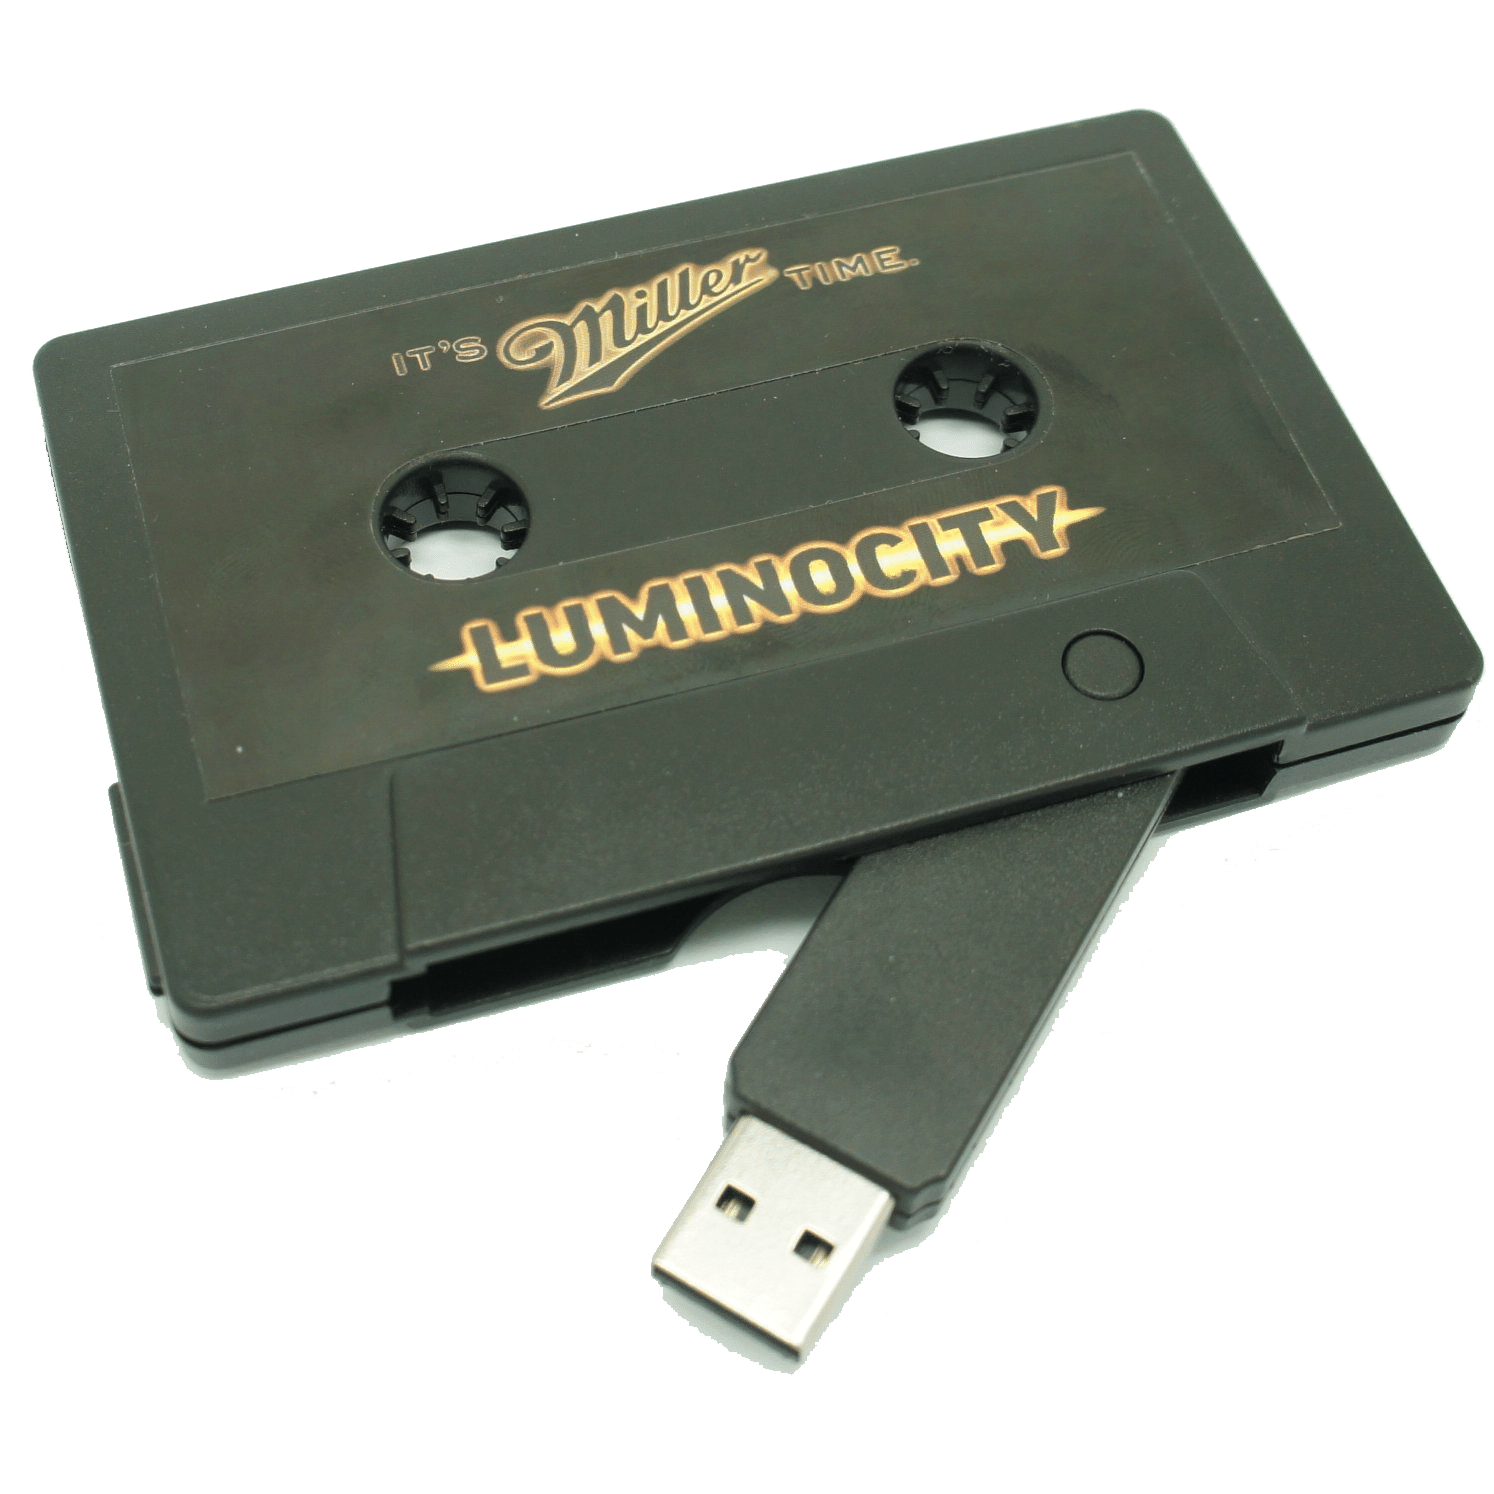 Clé USB en forme de cassette audio - Made to USB